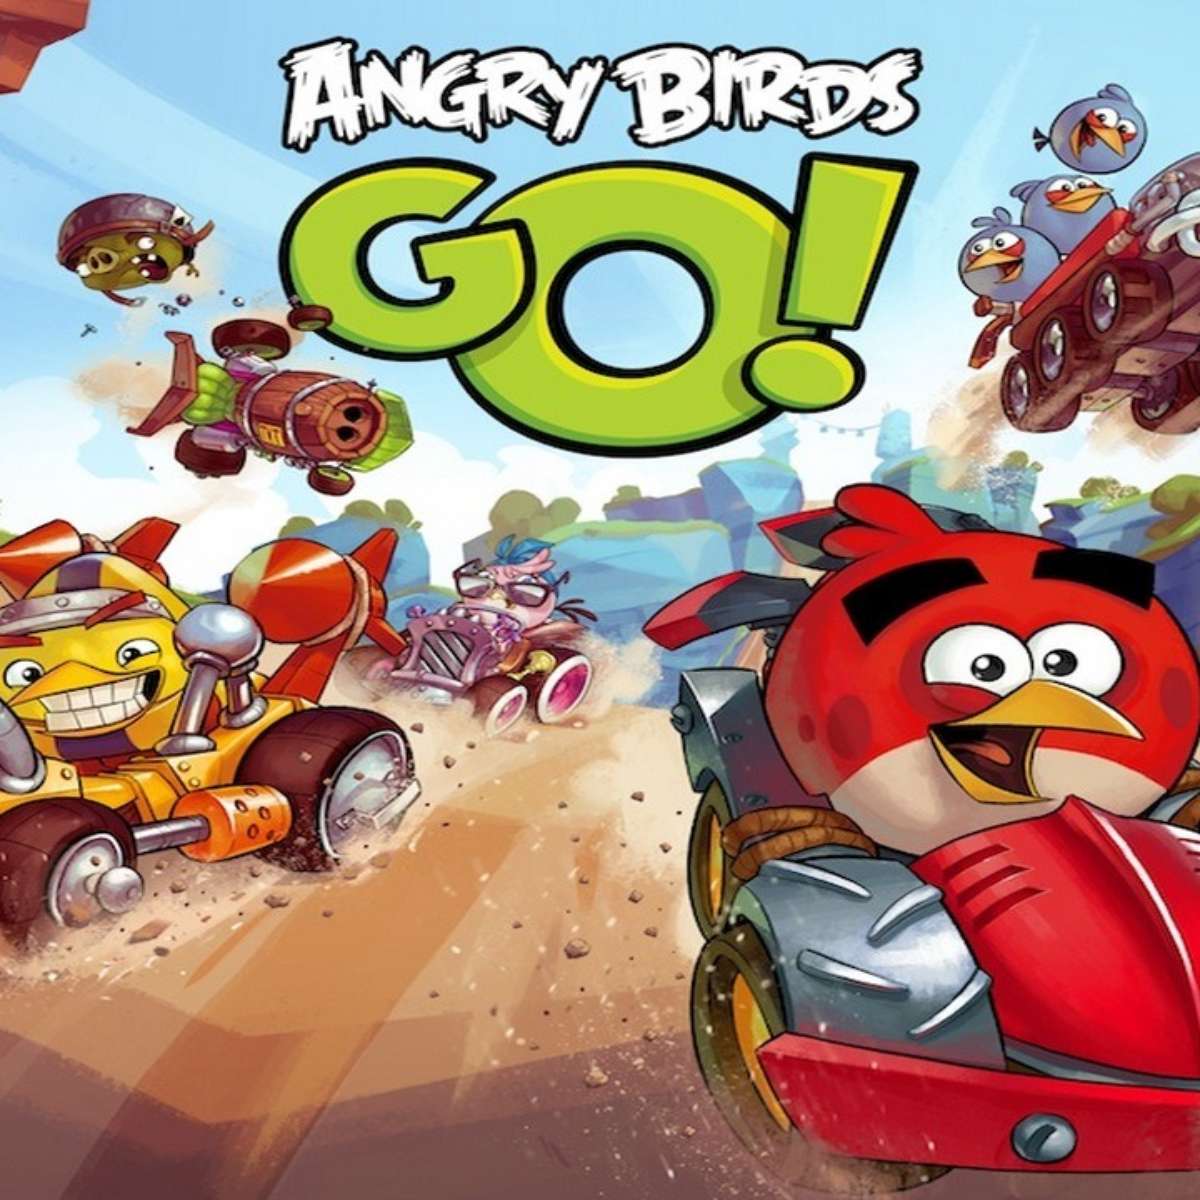 Angry Birds go игра. Angry Birds go Старая версия. Фон Angry Birds go. Angry Birds go андроид старую. Бердз гоу старая версия